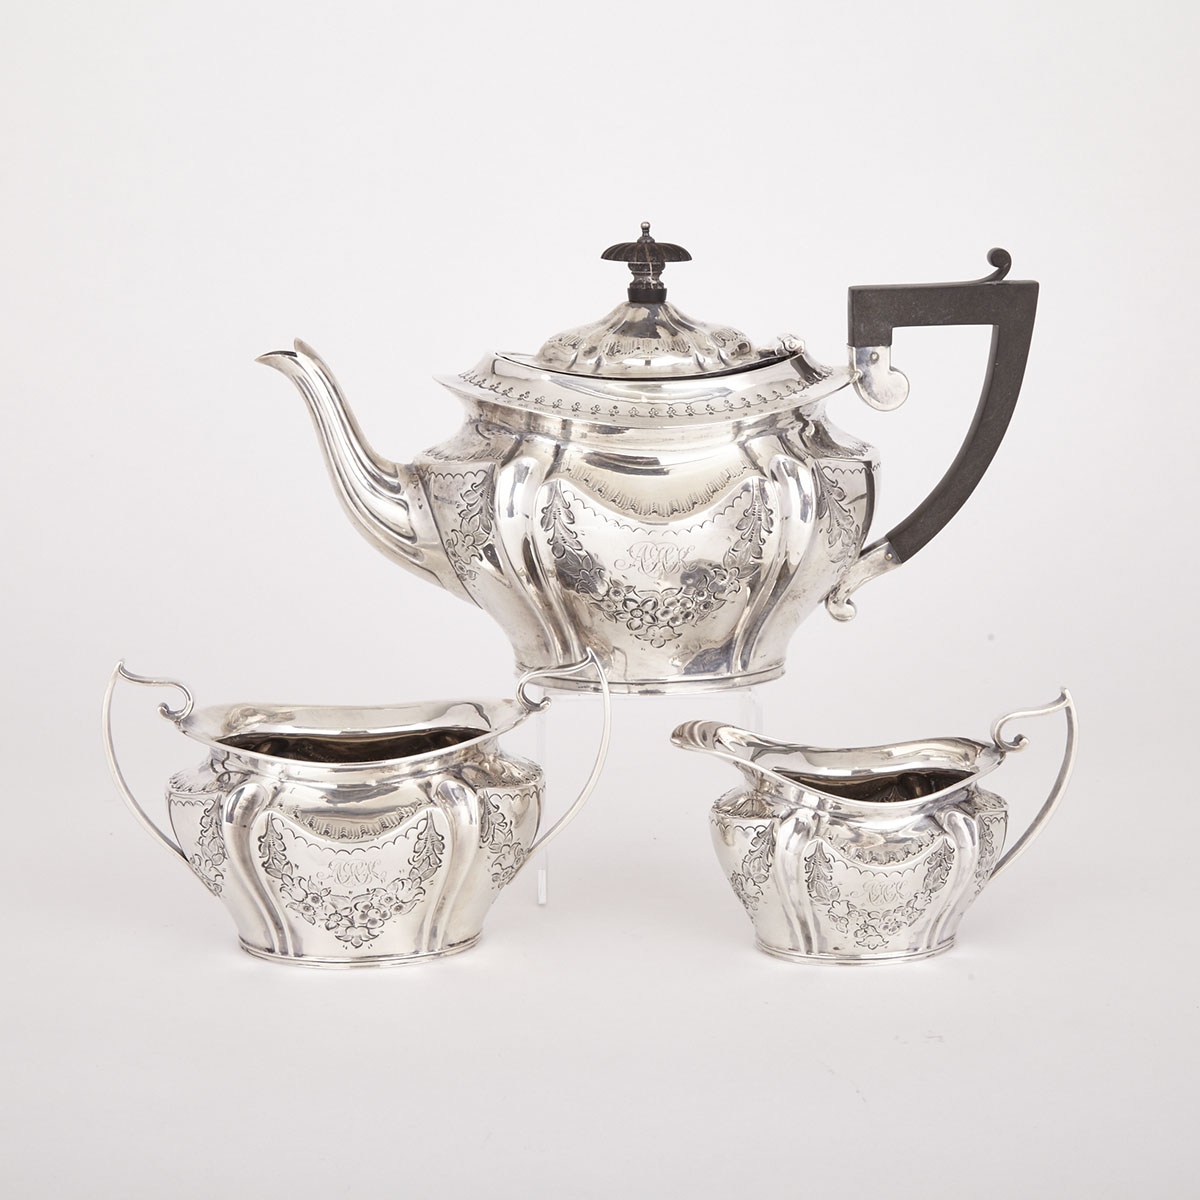 Edwardian Silver Tea Service, Asprey & Co. Ltd., Sheffield, 1902